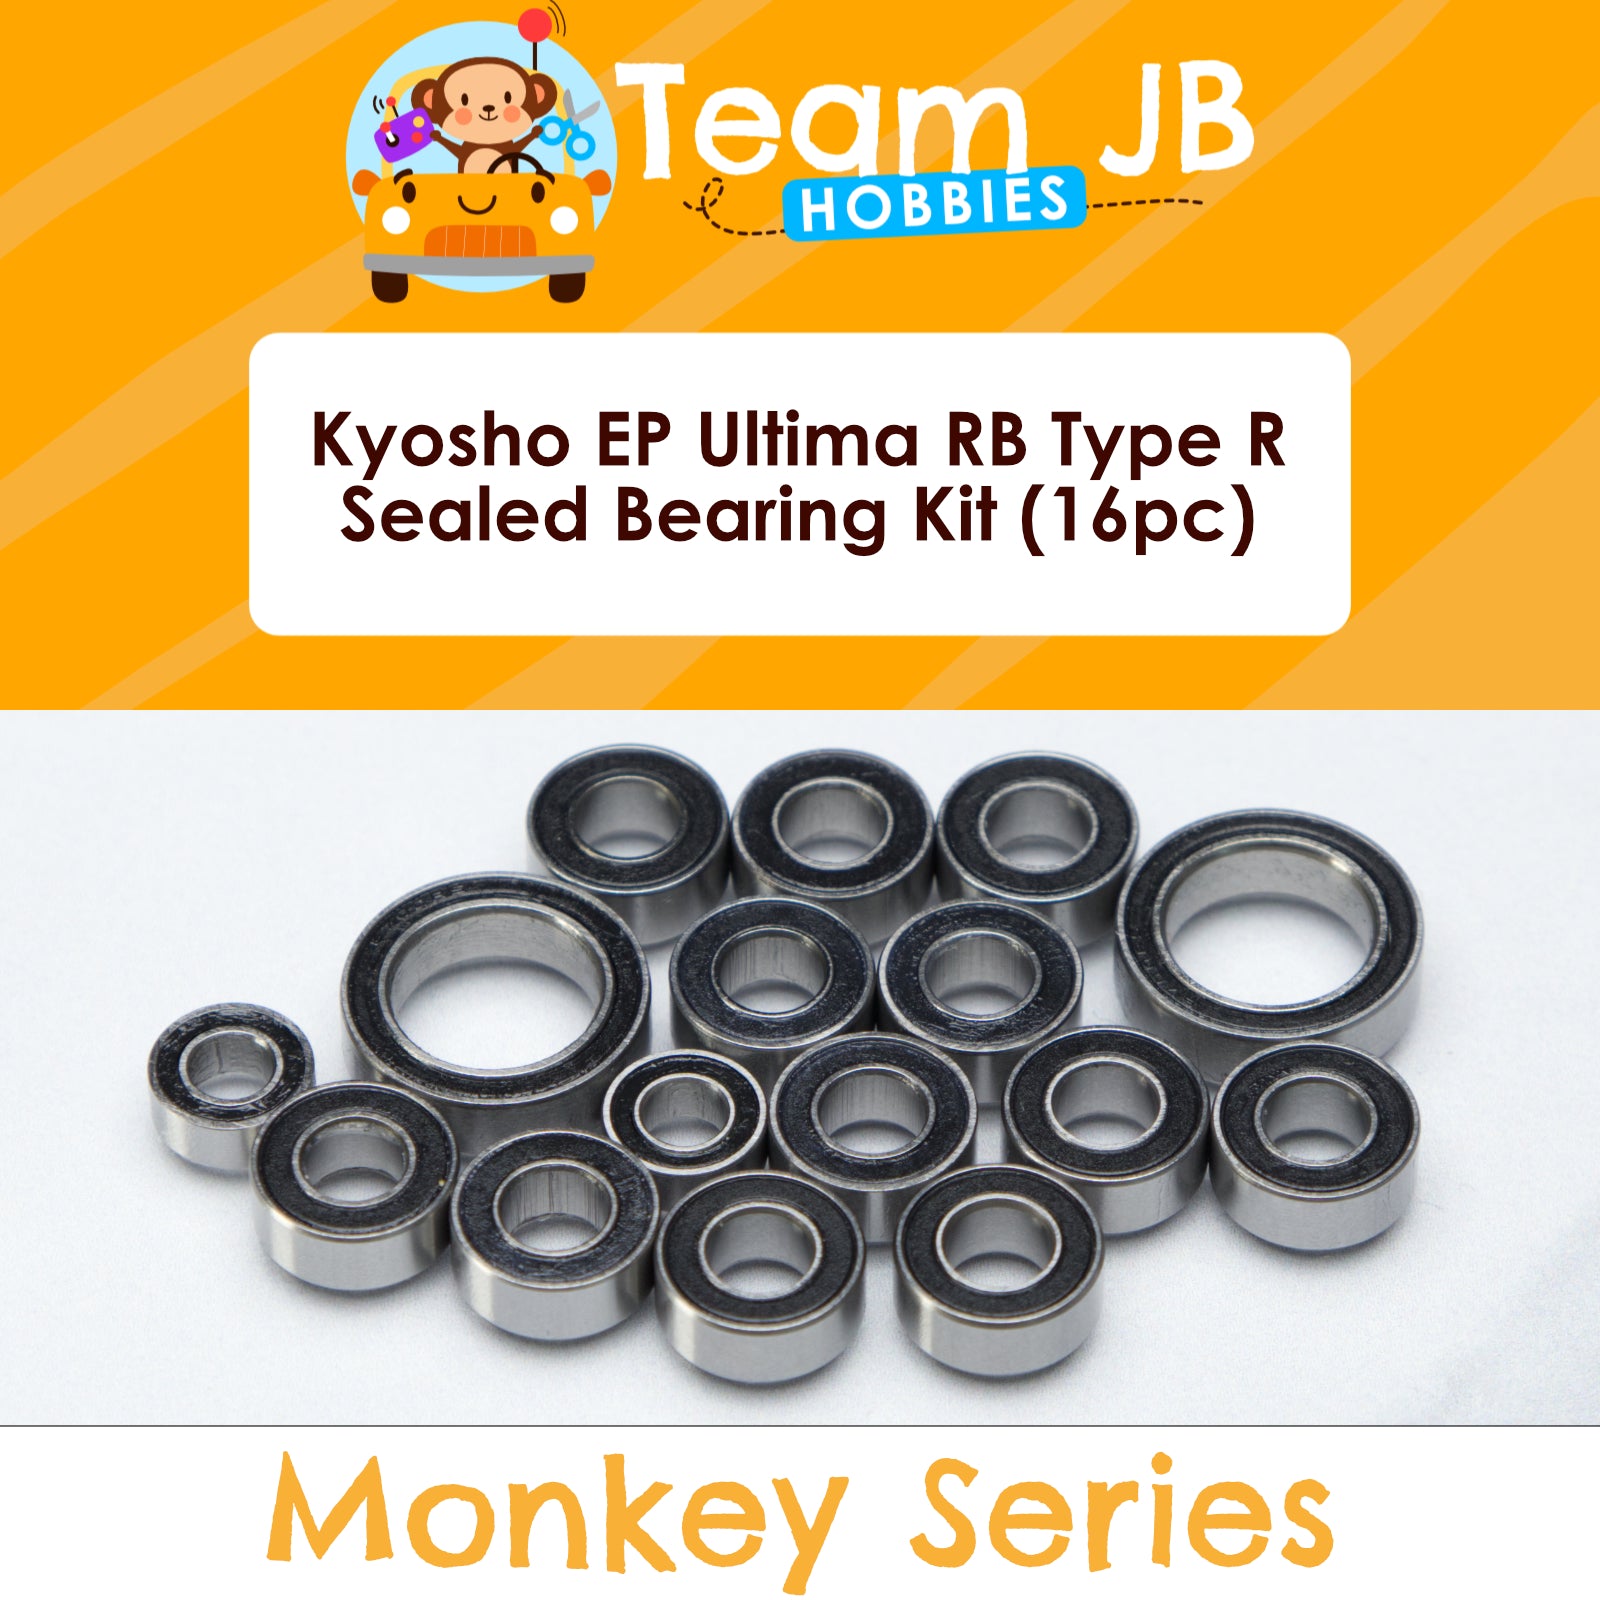 Kyosho EP Ultima RB Type R - Sealed Bearing Kit